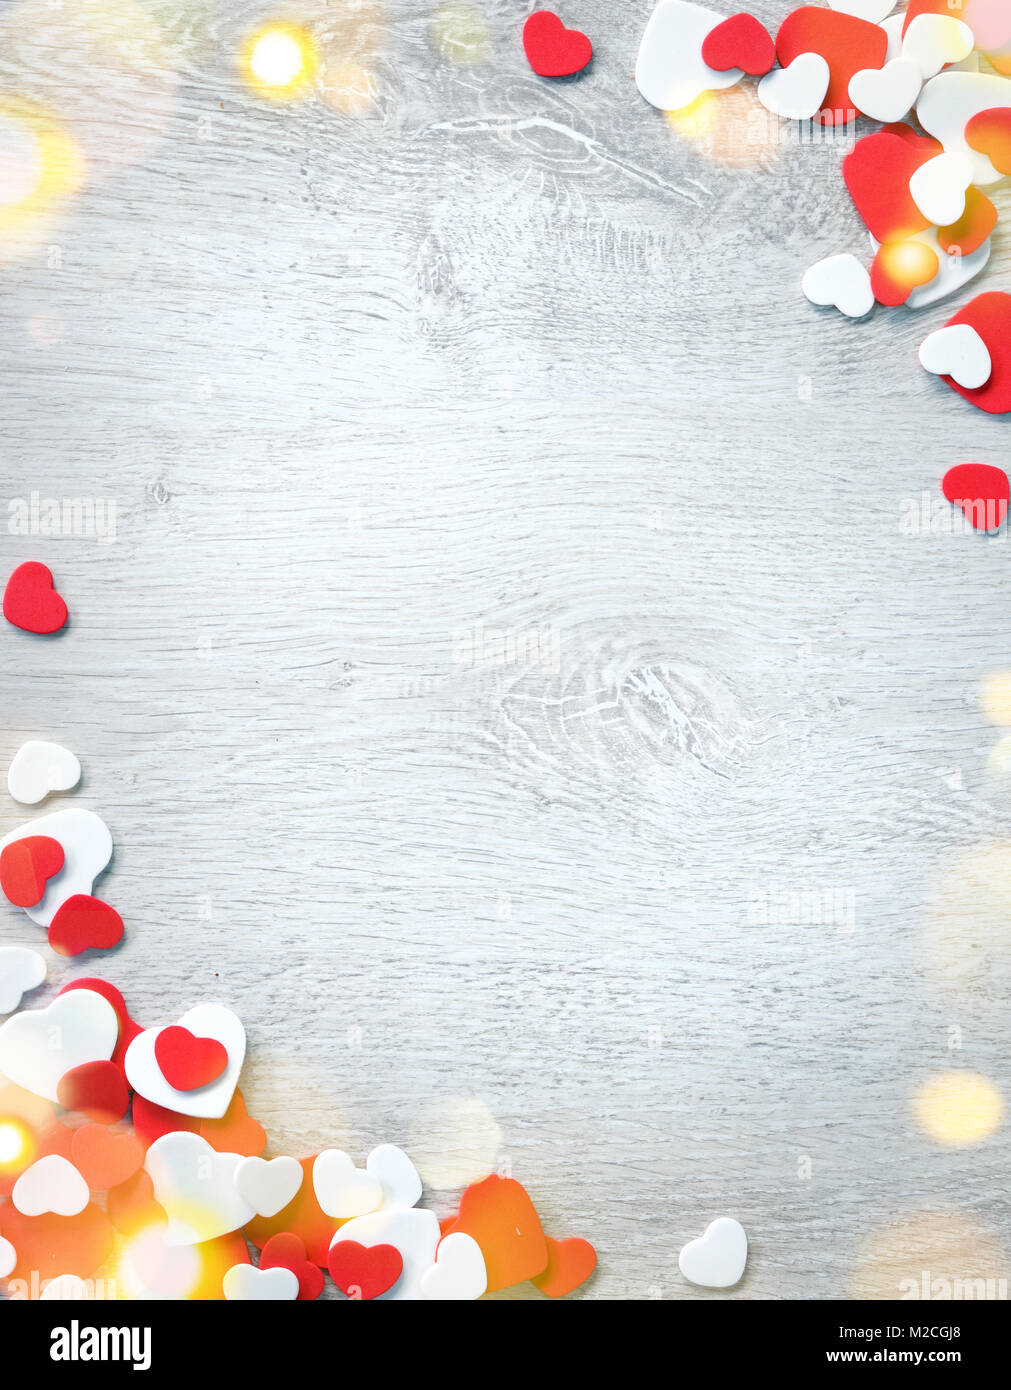 Schönen romantischen Rahmen. Dekorative rote und weiße Herzen auf Holz- Hintergrund. Blick von oben. Liebe und St. Valentines Tag Konzept Stockfoto